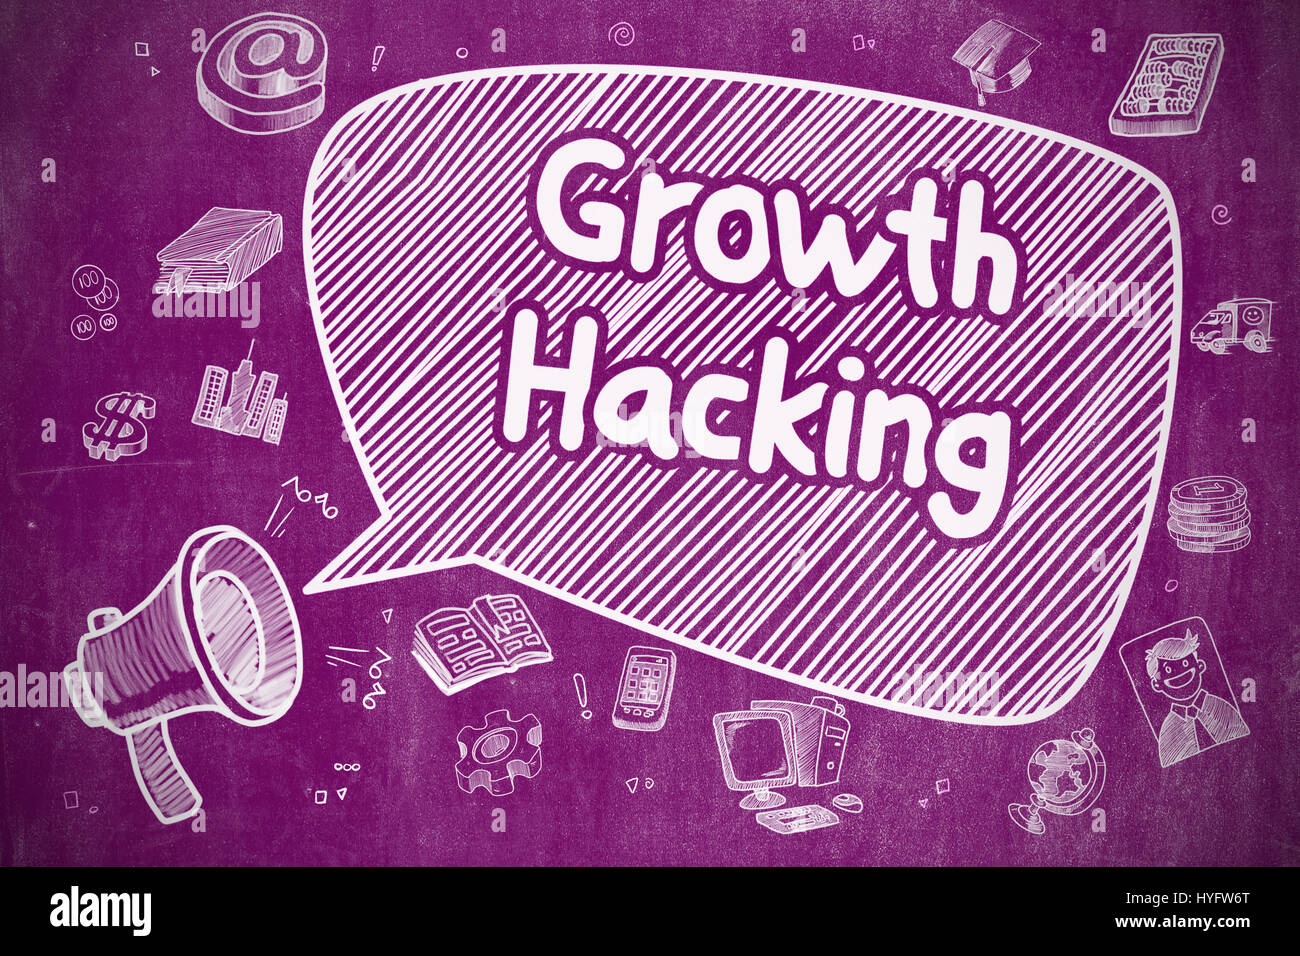 Growth Hacking - Cartoon Illustration on Purple Chalkboard. Stock Photo